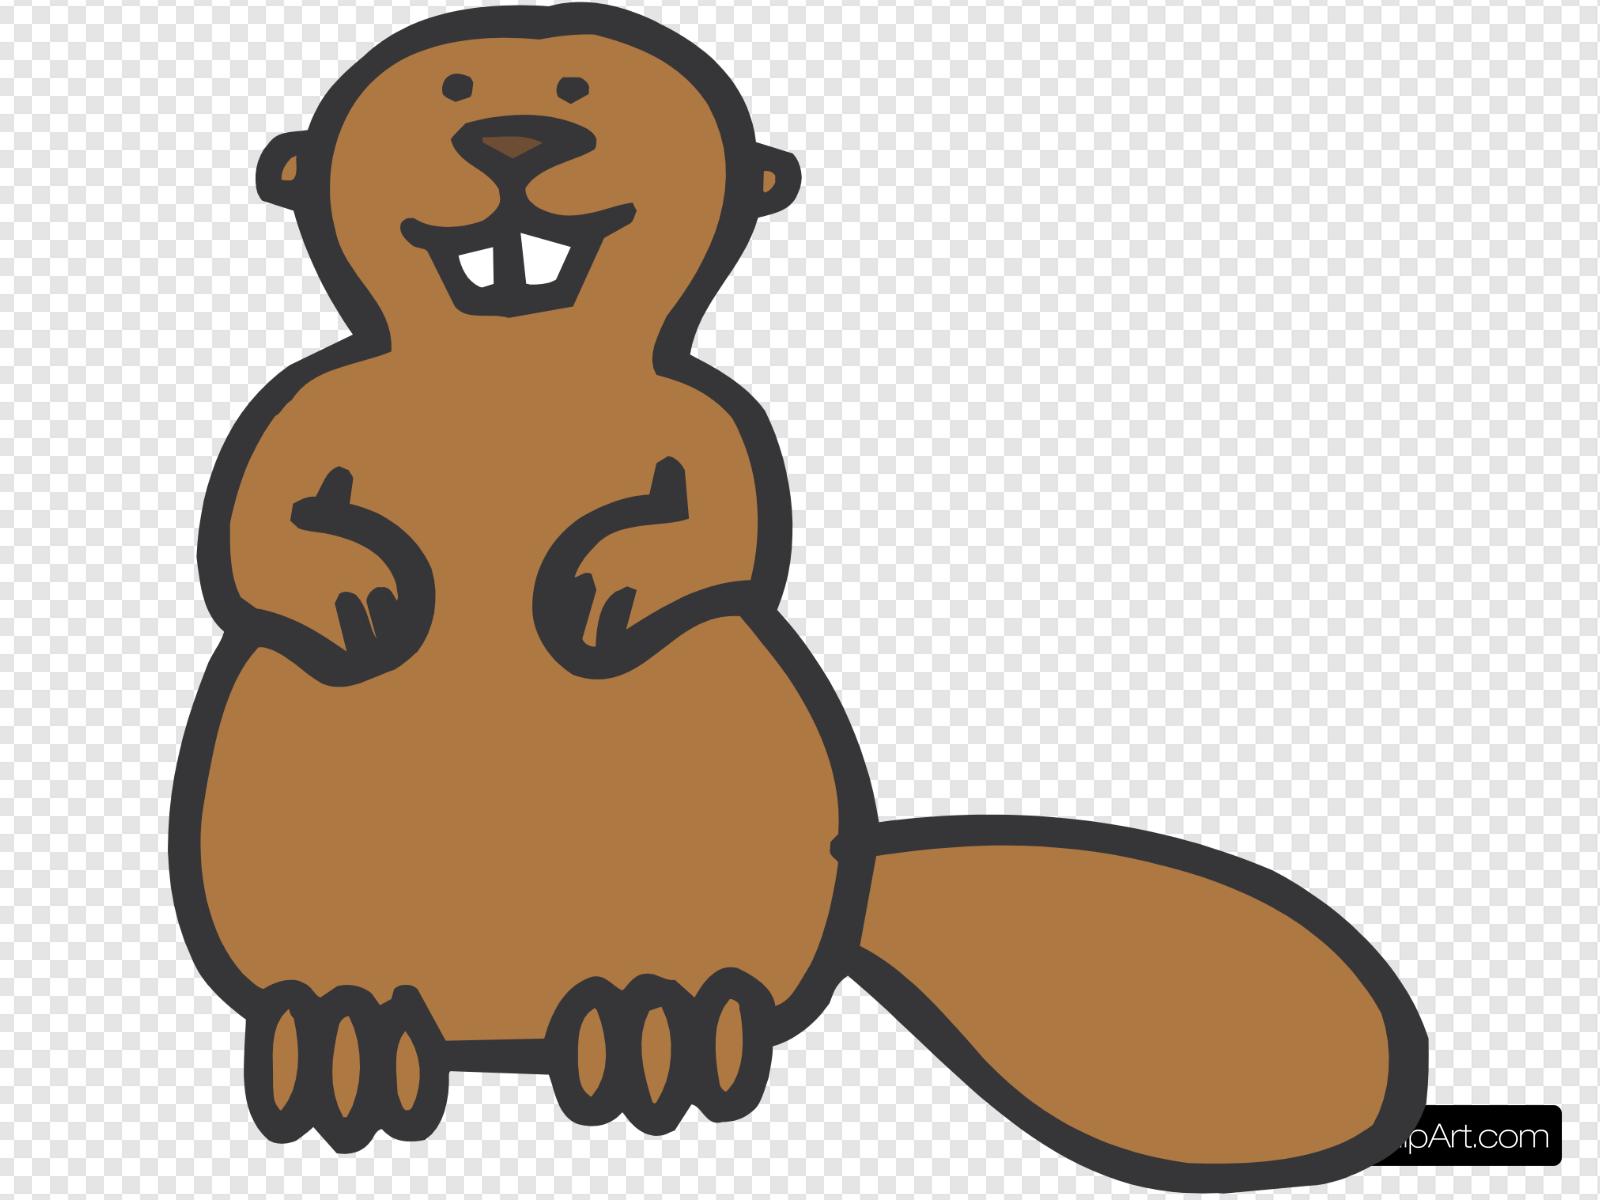 Simple beaver cartoon.